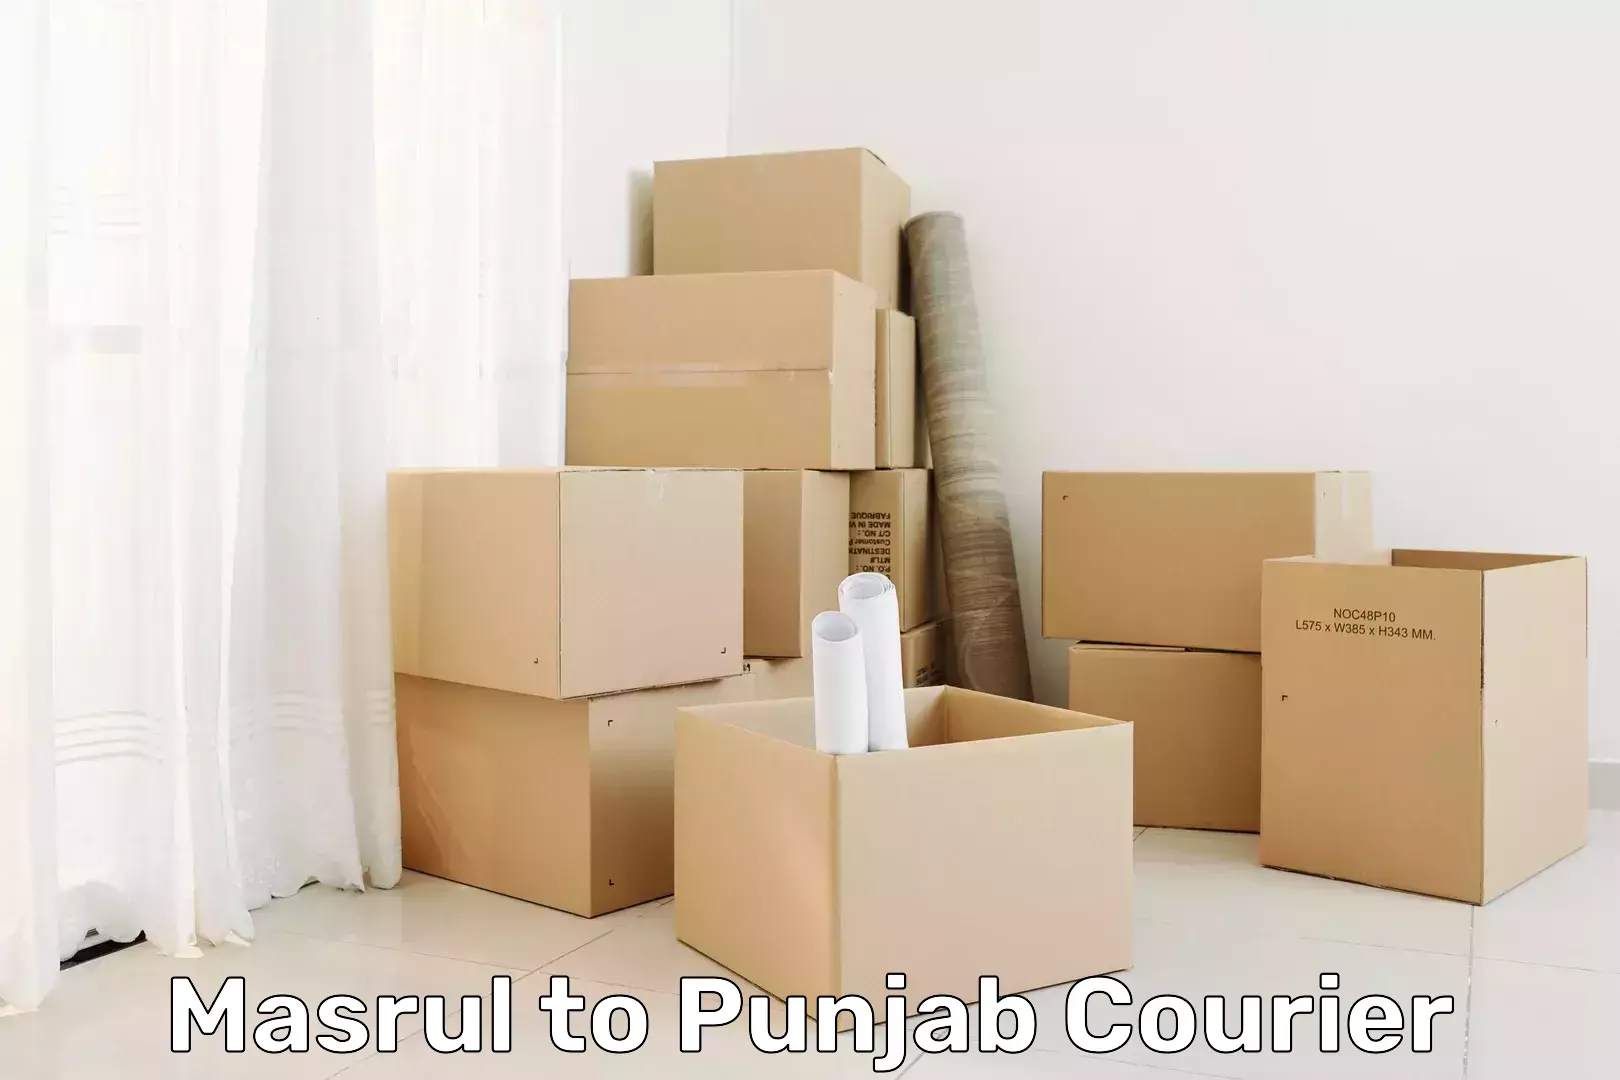 Express courier facilities Masrul to Punjab